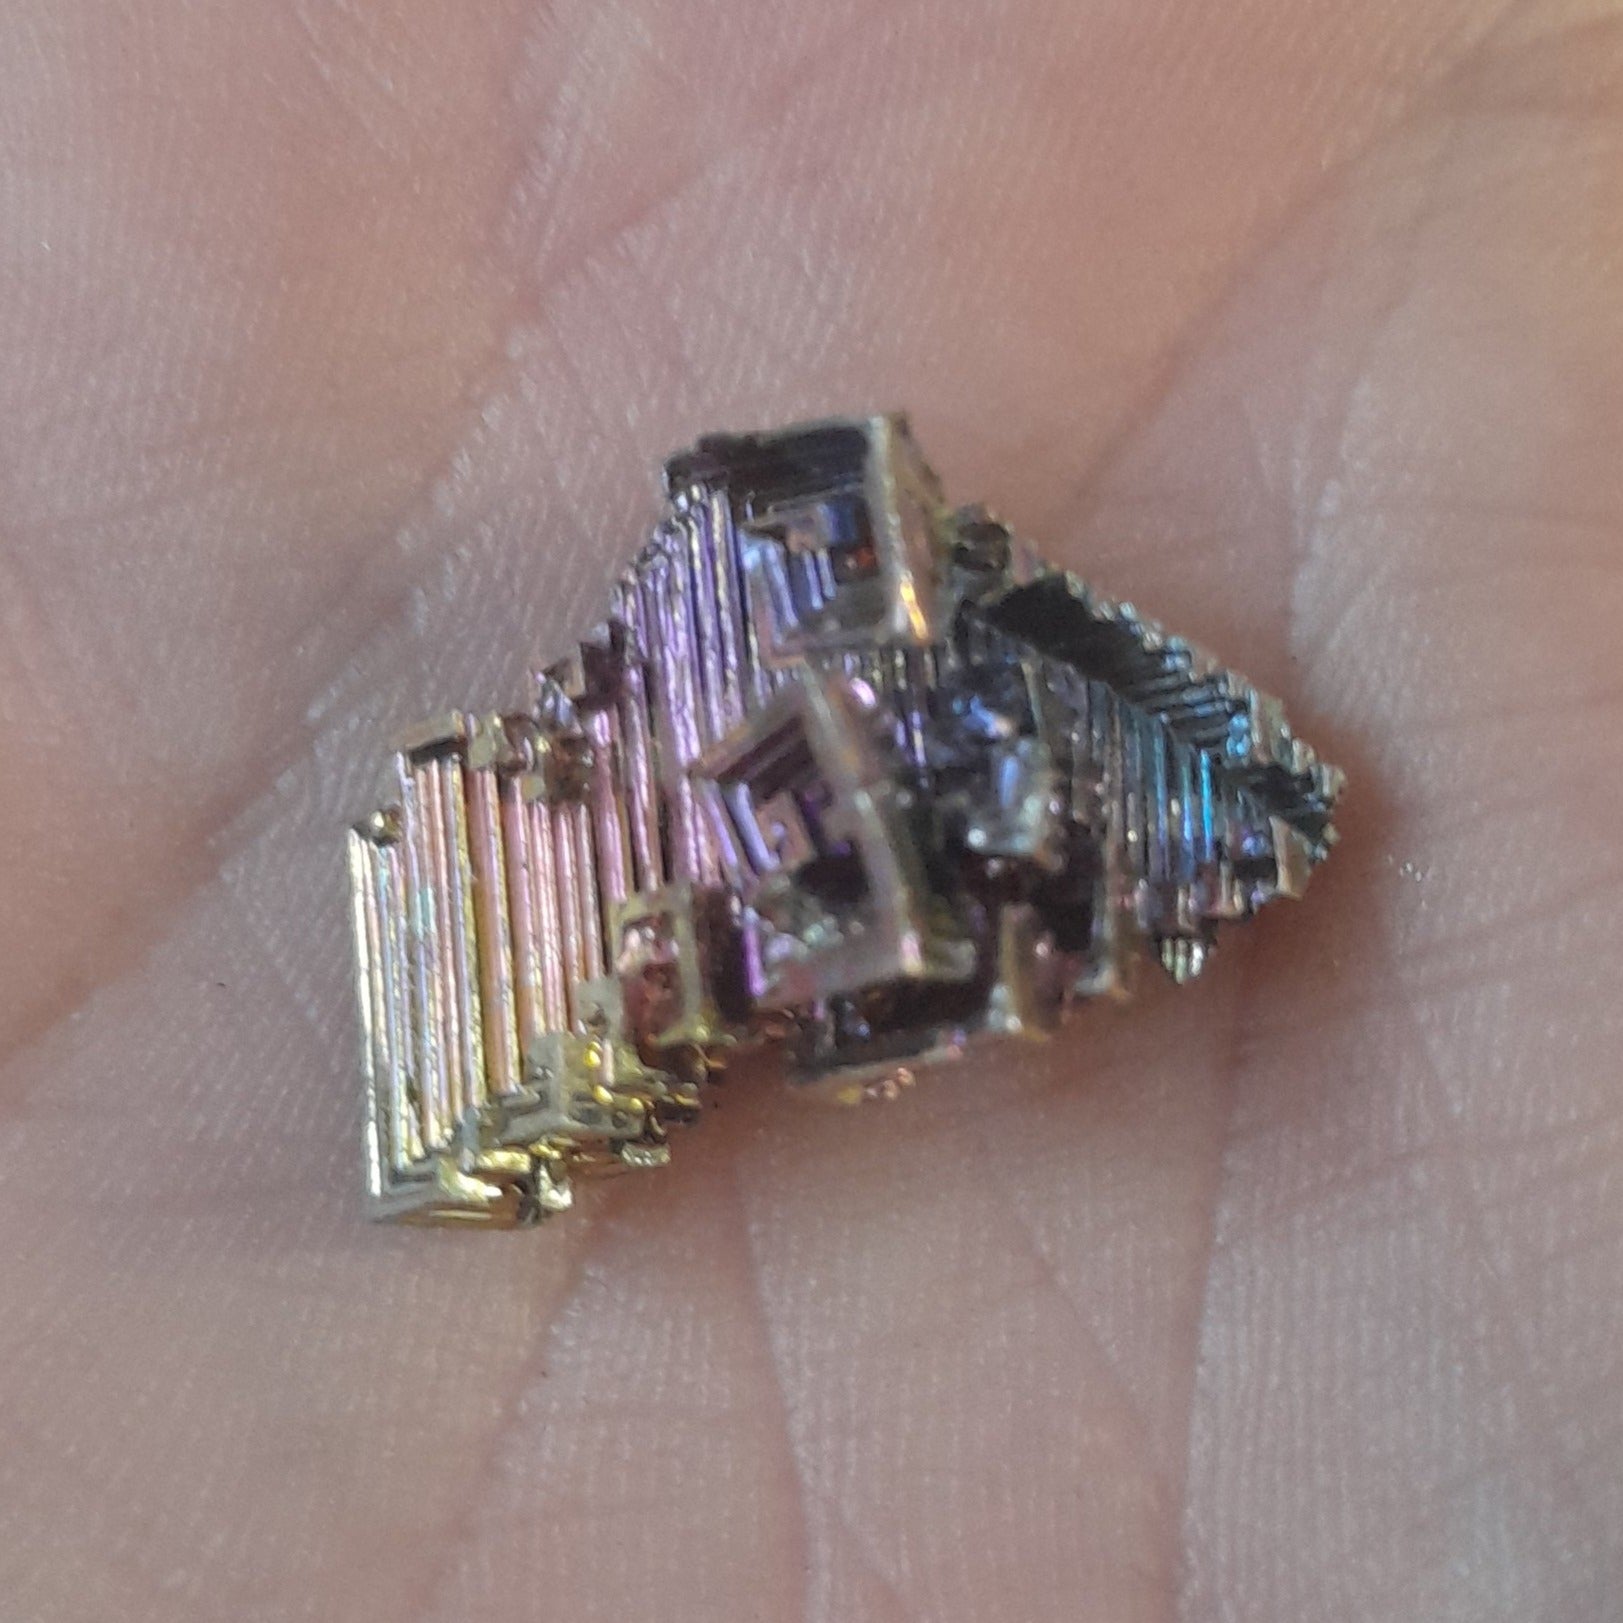 Bismuth (man made)